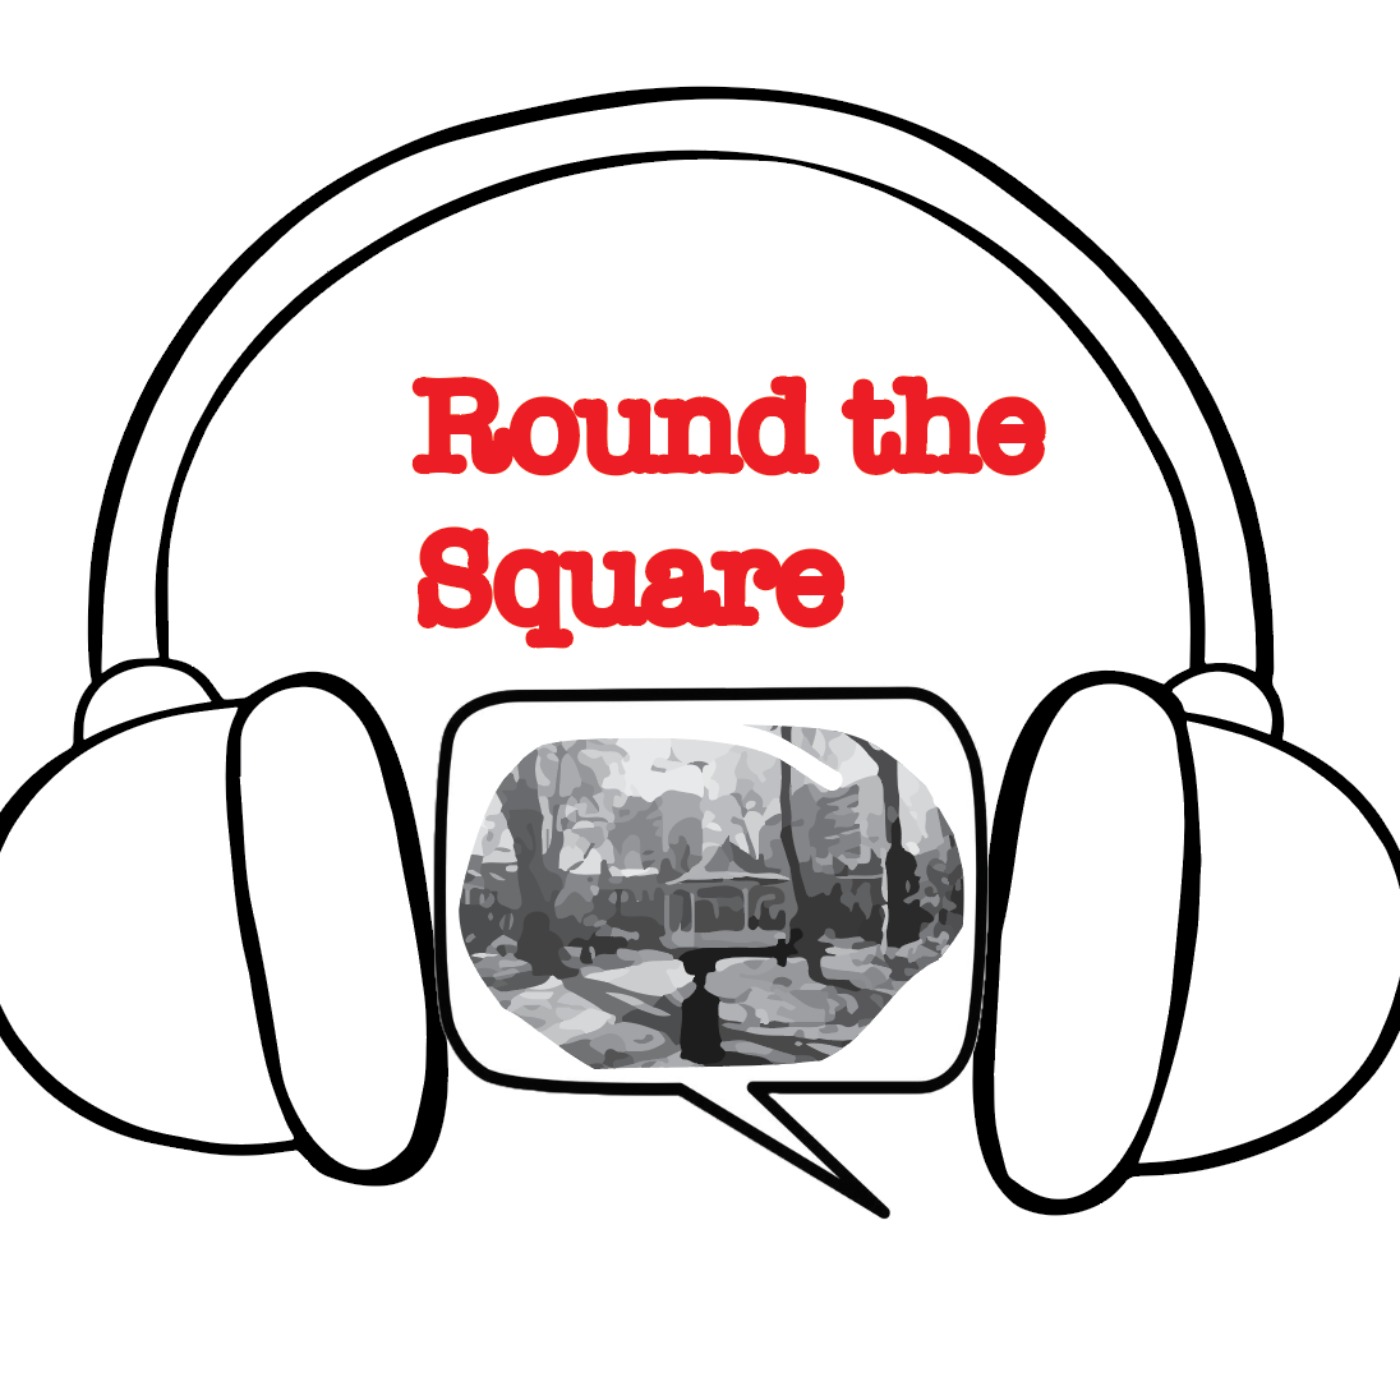 (Running) Round The Square